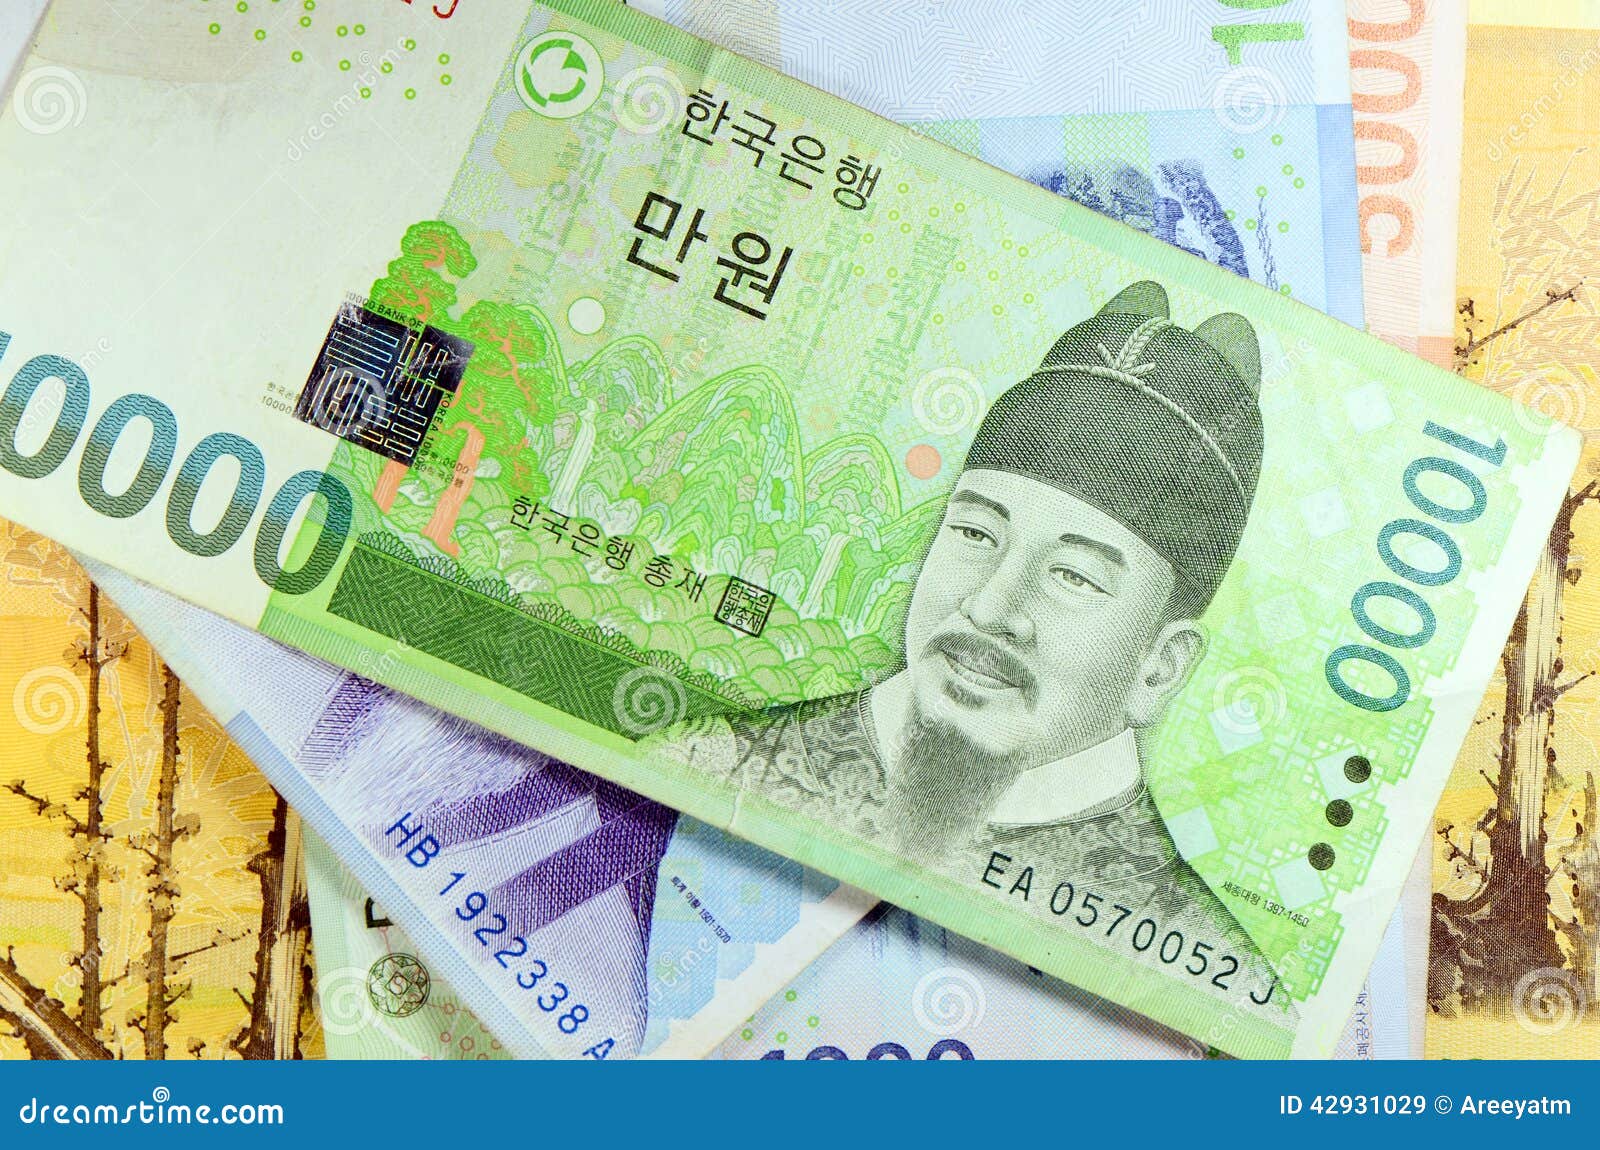 Южная корея вона к рублю на сегодня. Валюта Южной Кореи. Южнокорейская вона. Южнокорейские воны в рубли. Южнокорейская вона к рублю.